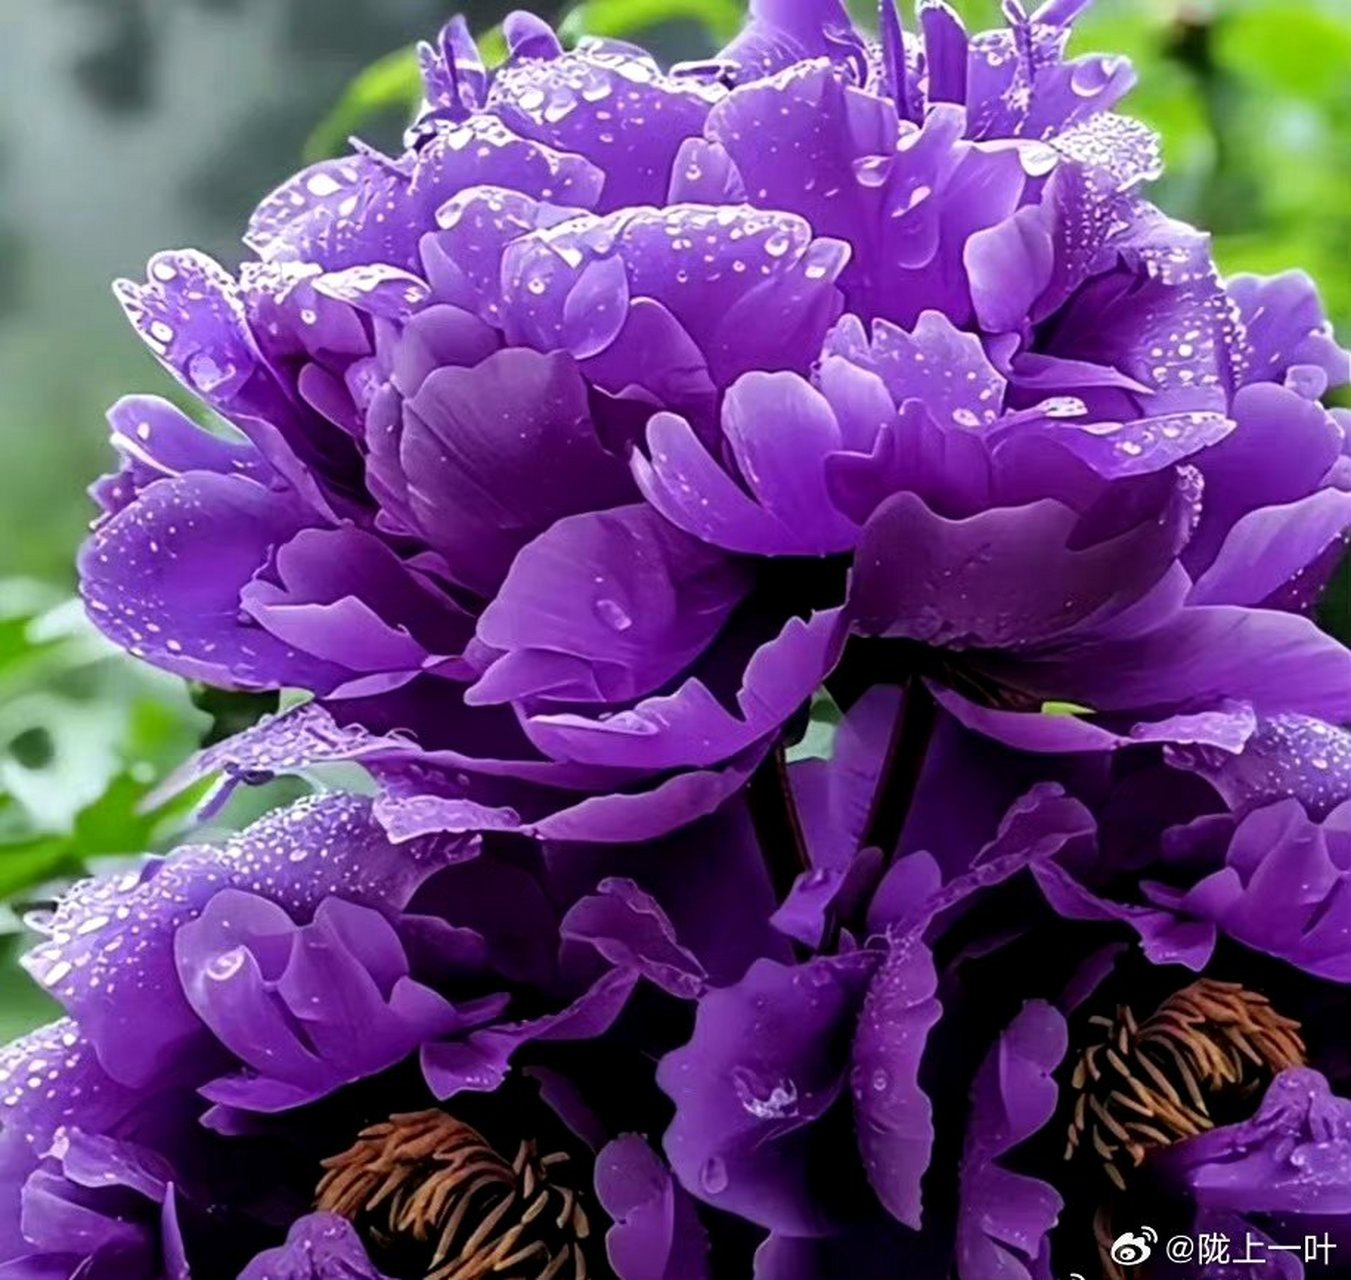 90紫色牡丹花,美得让人窒息!